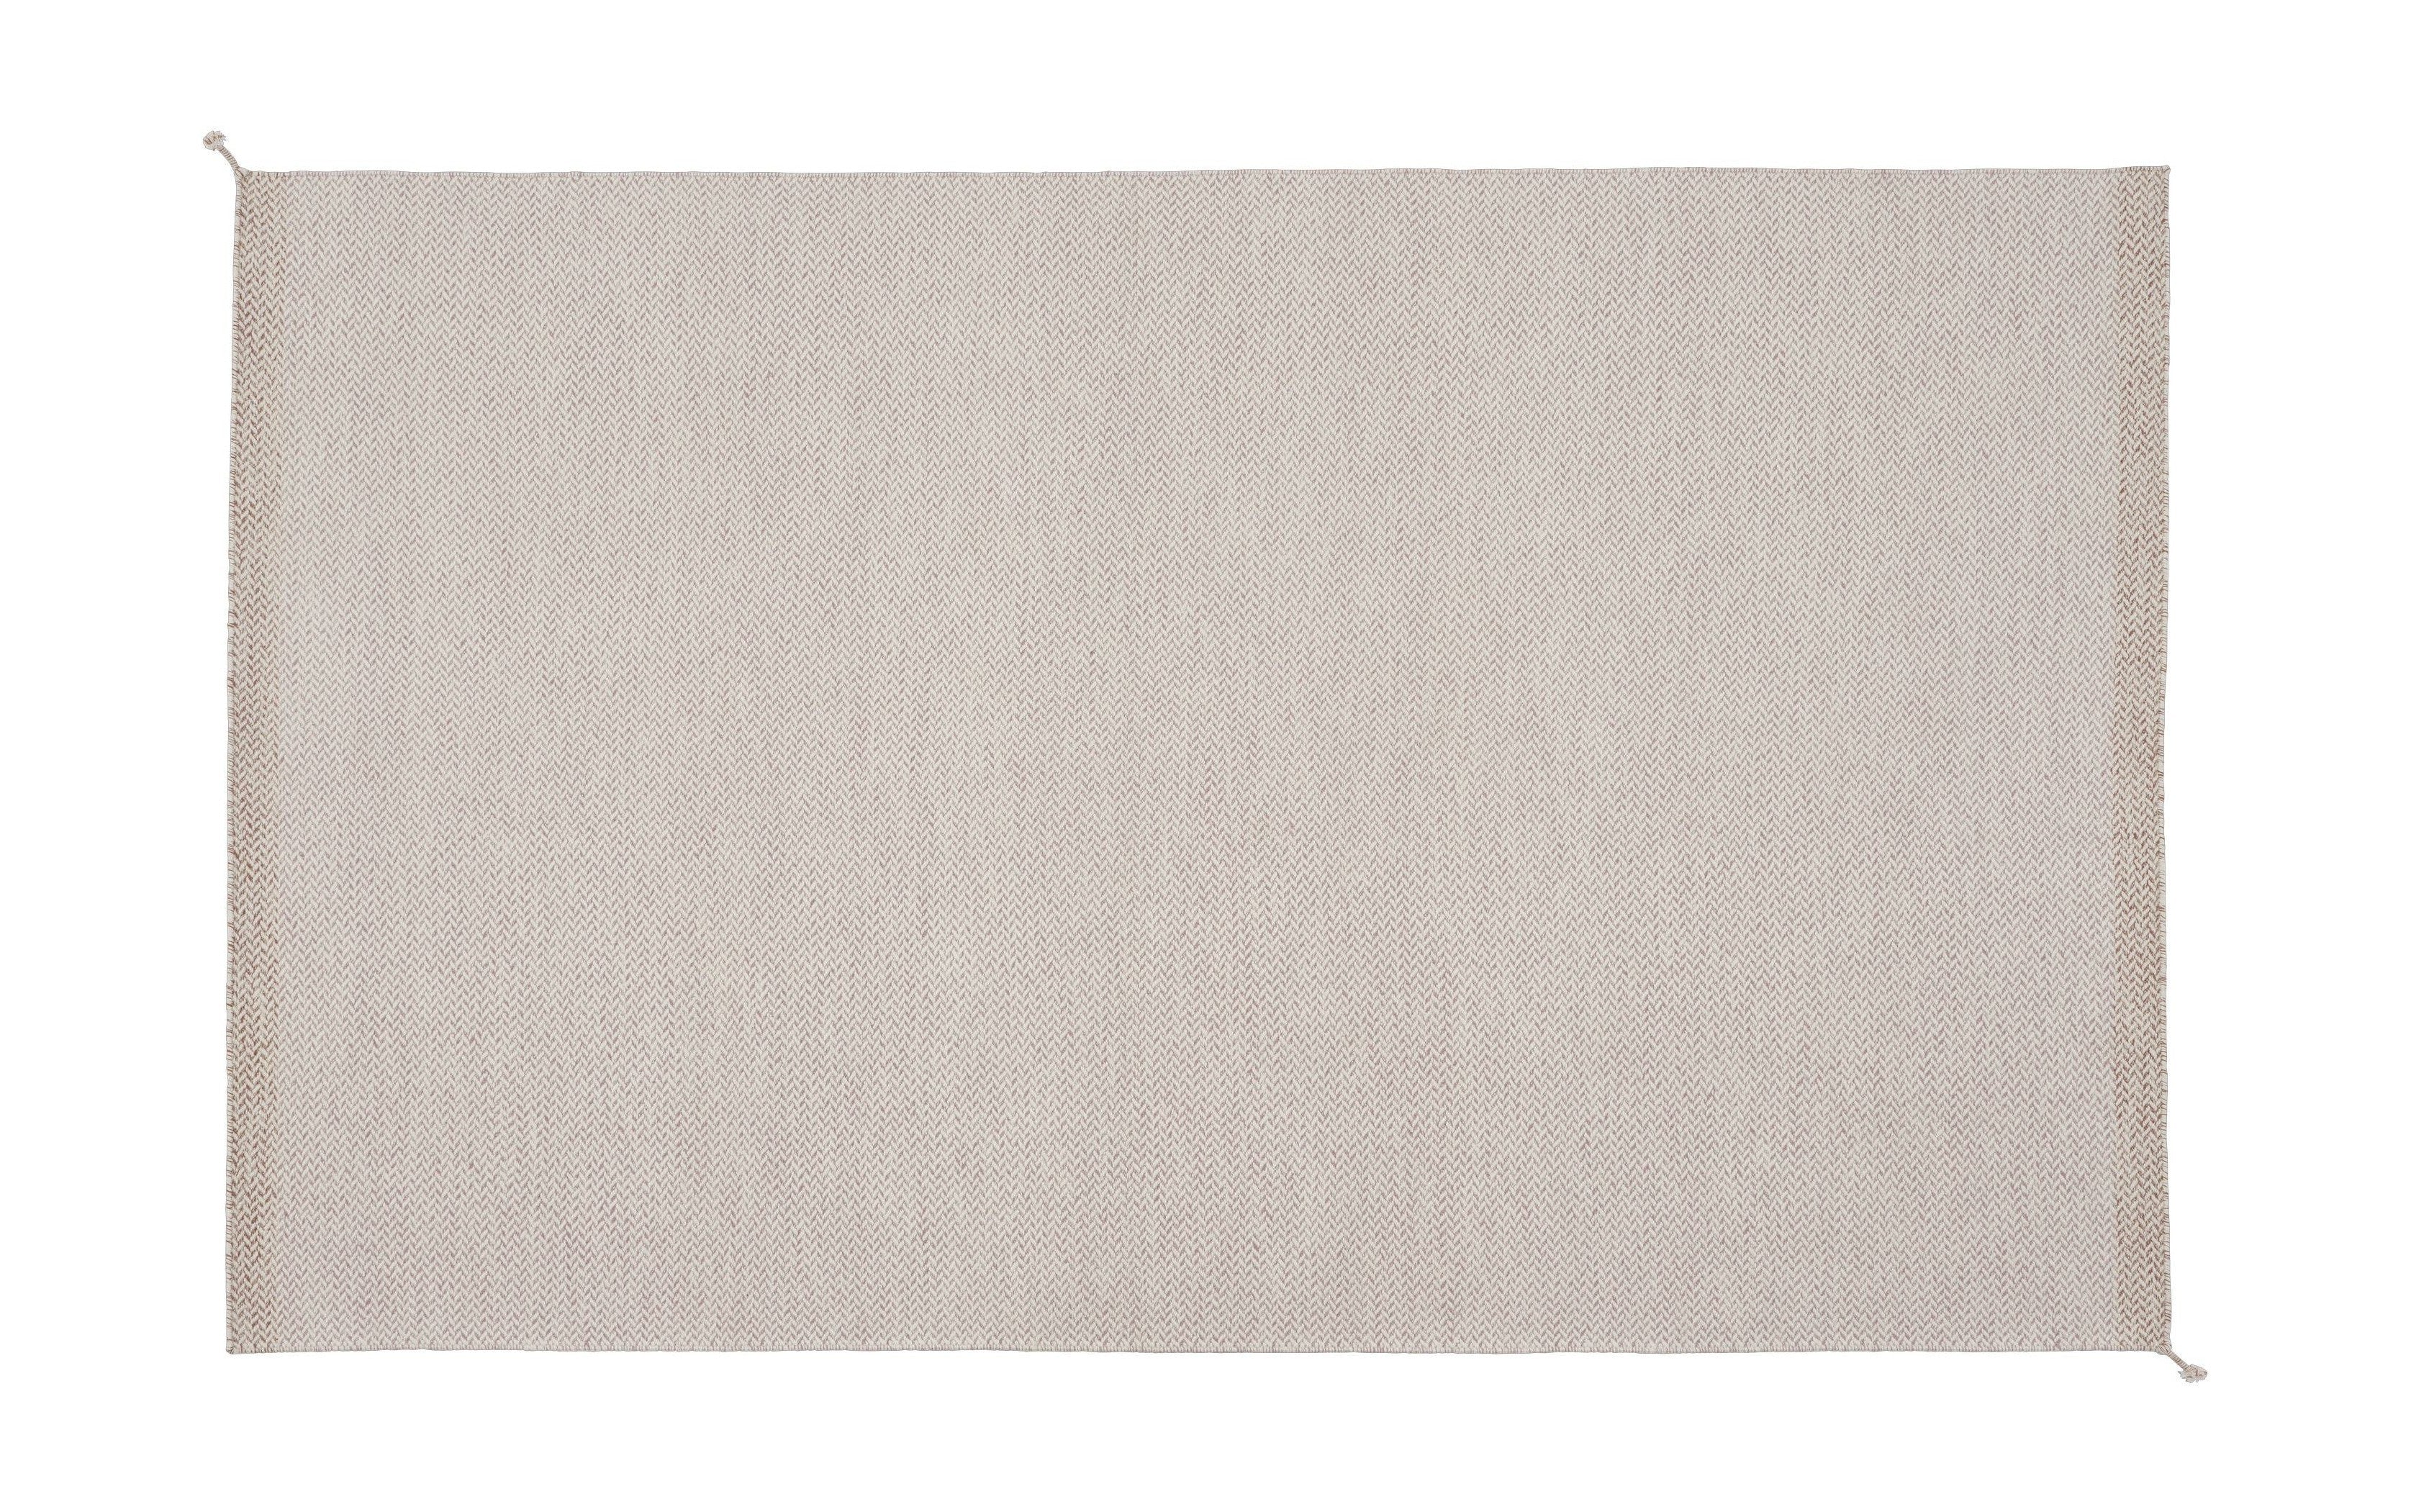 Rose de la alfombra Muuto Capas, 300 x 200 cm